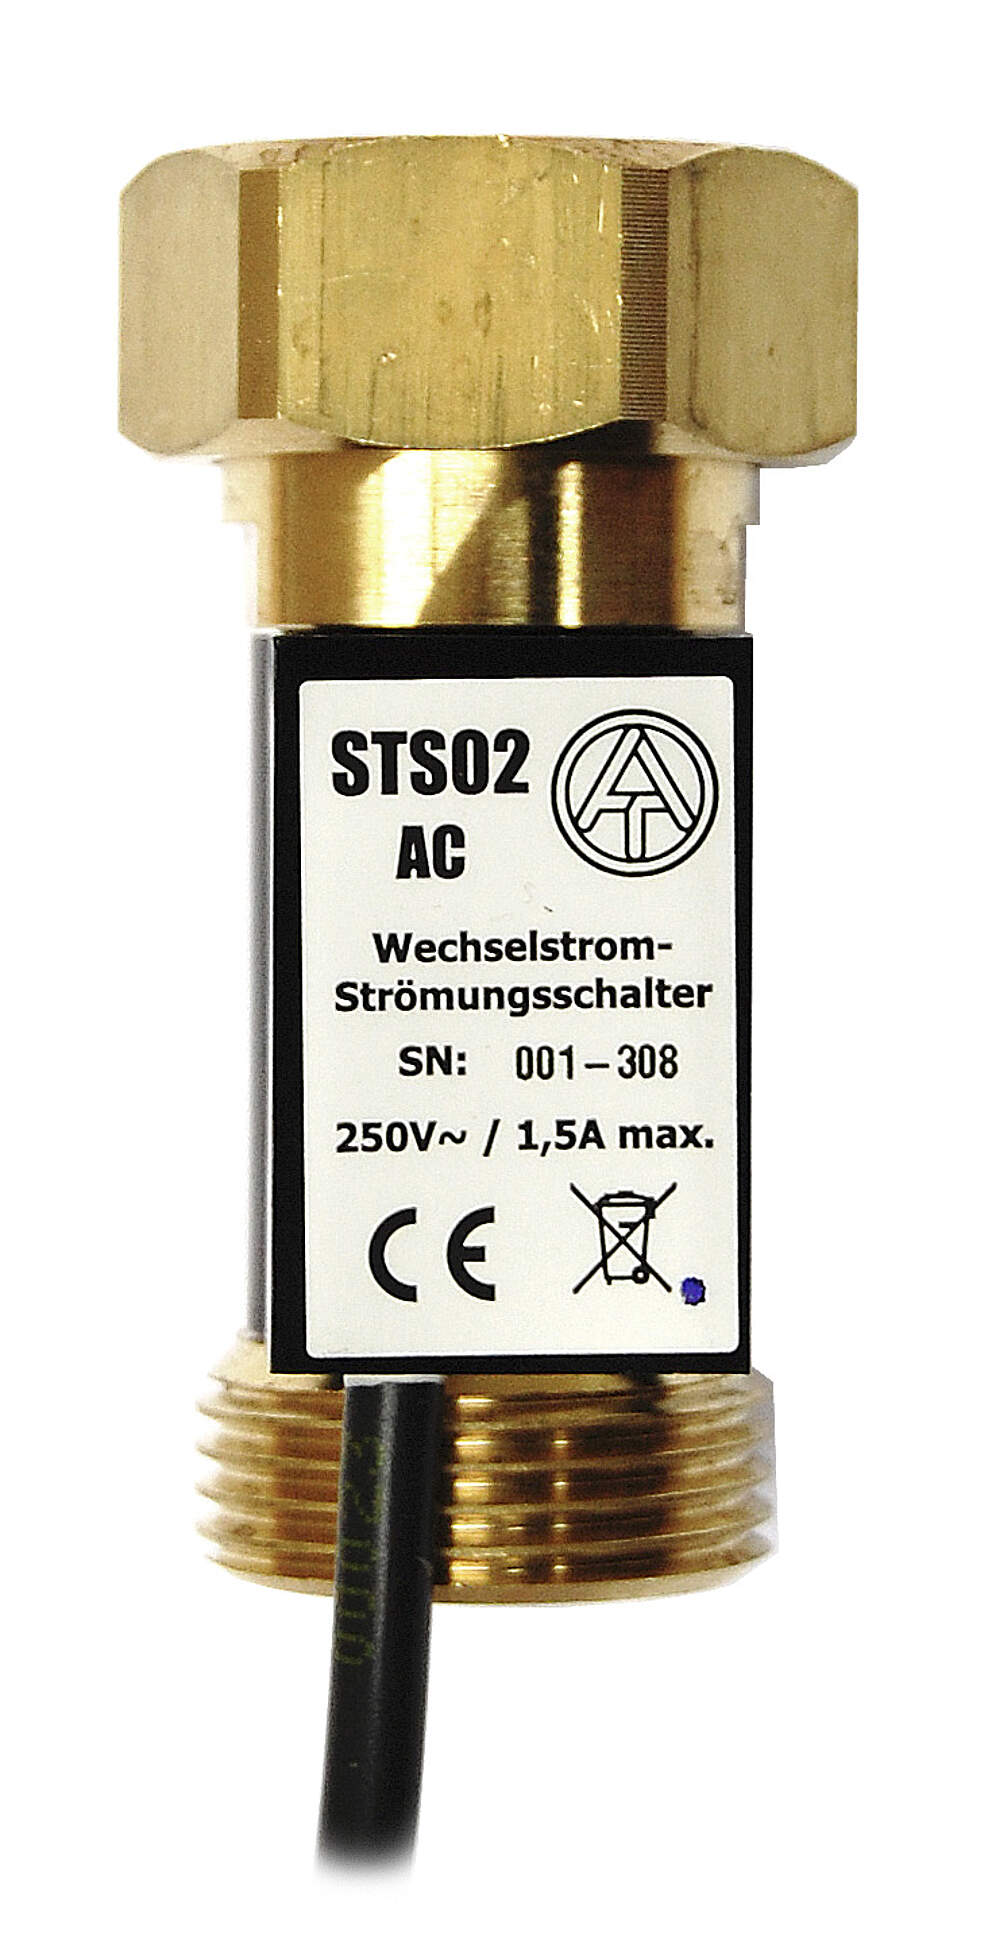 TA Strömungsschalter STS01AC, 3/4" Überwurfmutter x 3/4" AG, zum direkten Schalten von Asynchronpumpen am 230 V~ Netz bis 1,5 A